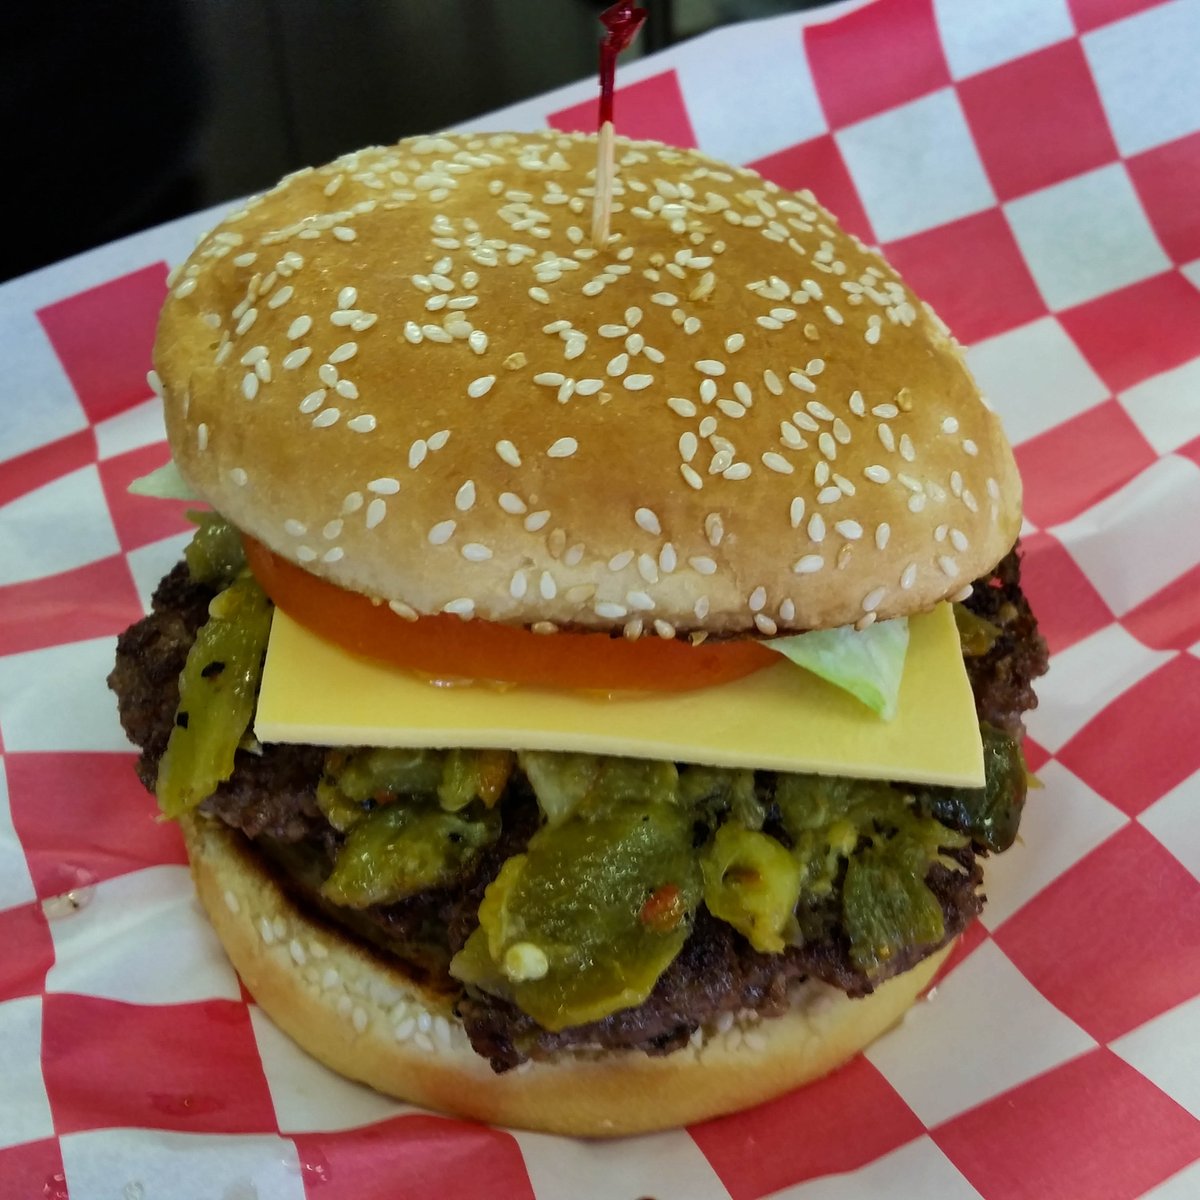 Home of the Laguna Burger - ow.ly/6eDk50FlpfE

#dining #restaurant #cuisine #LagunaPueblo #Albuquerque